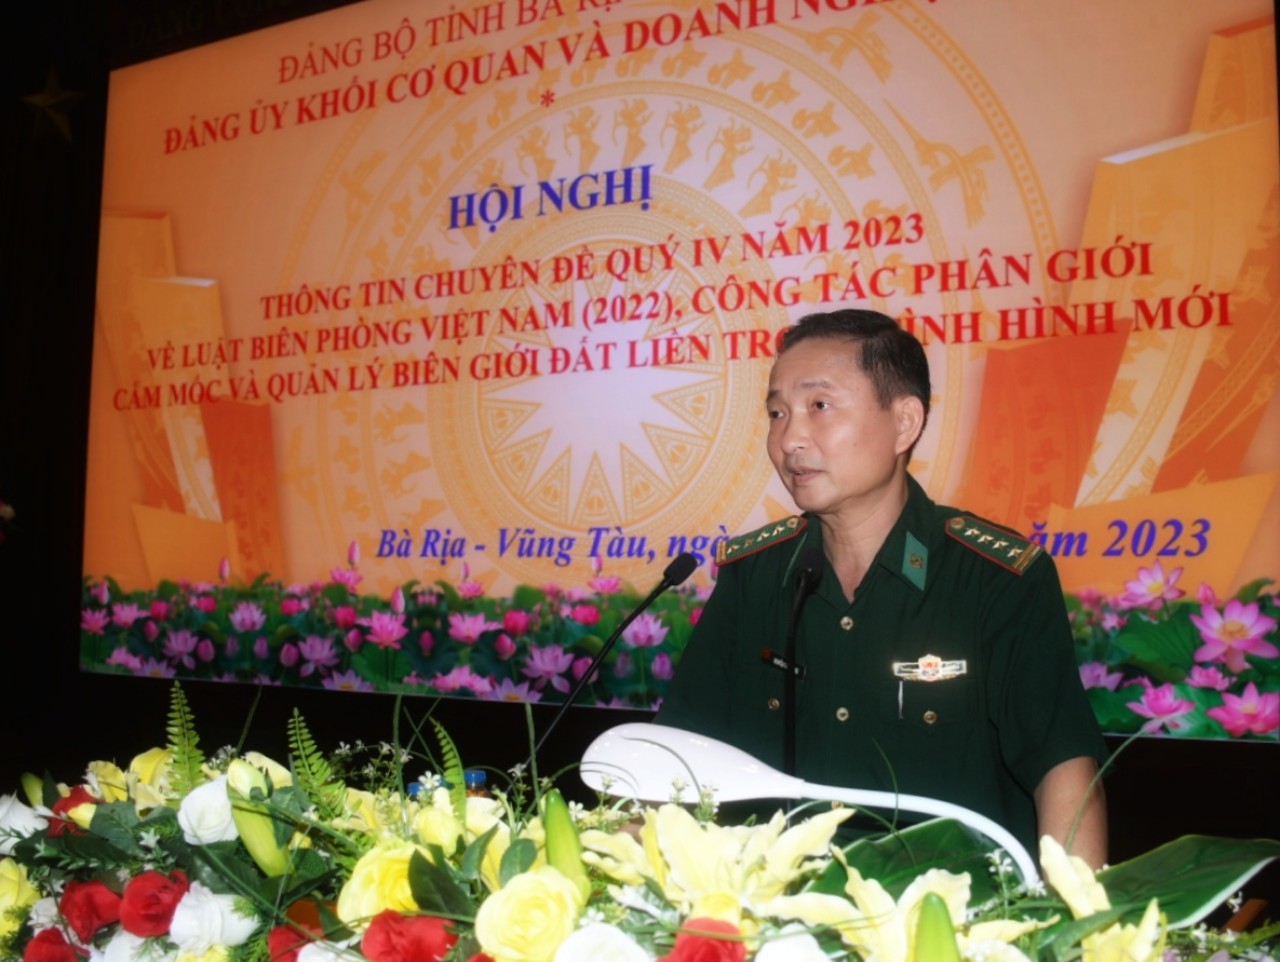 Đại tá Nguyễn Văn Thống, Phó Chính ủy Bộ đội Biên phòng tỉnh thông tin về công tác phân giới cắm mốc và quản lý biên giới đát liền.